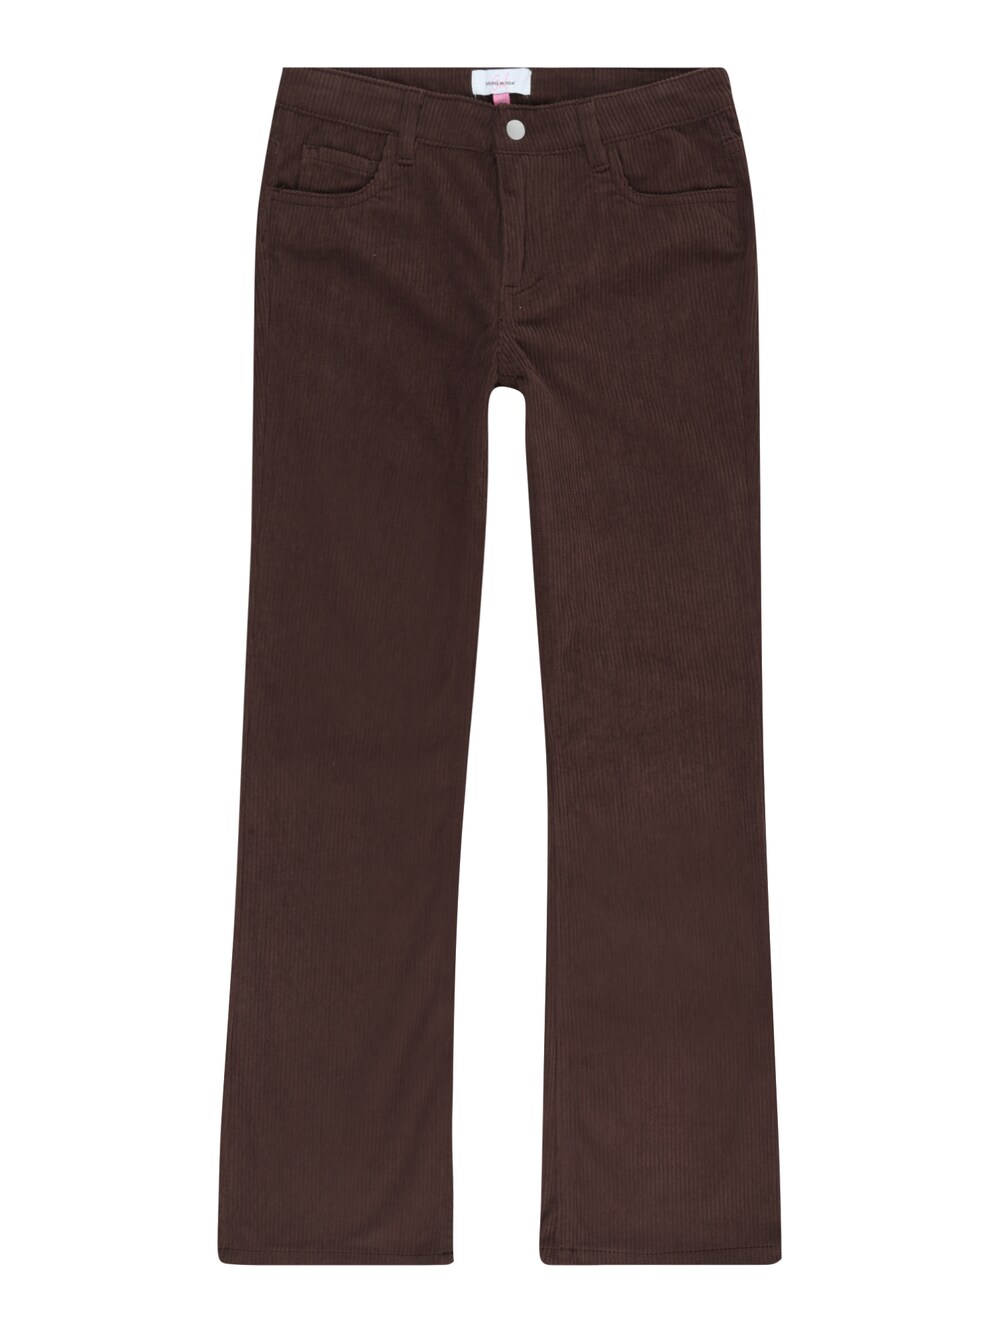 Расклешенные брюки Vero Moda Girl RIVER, темно коричневый тренч vero moda темно серый